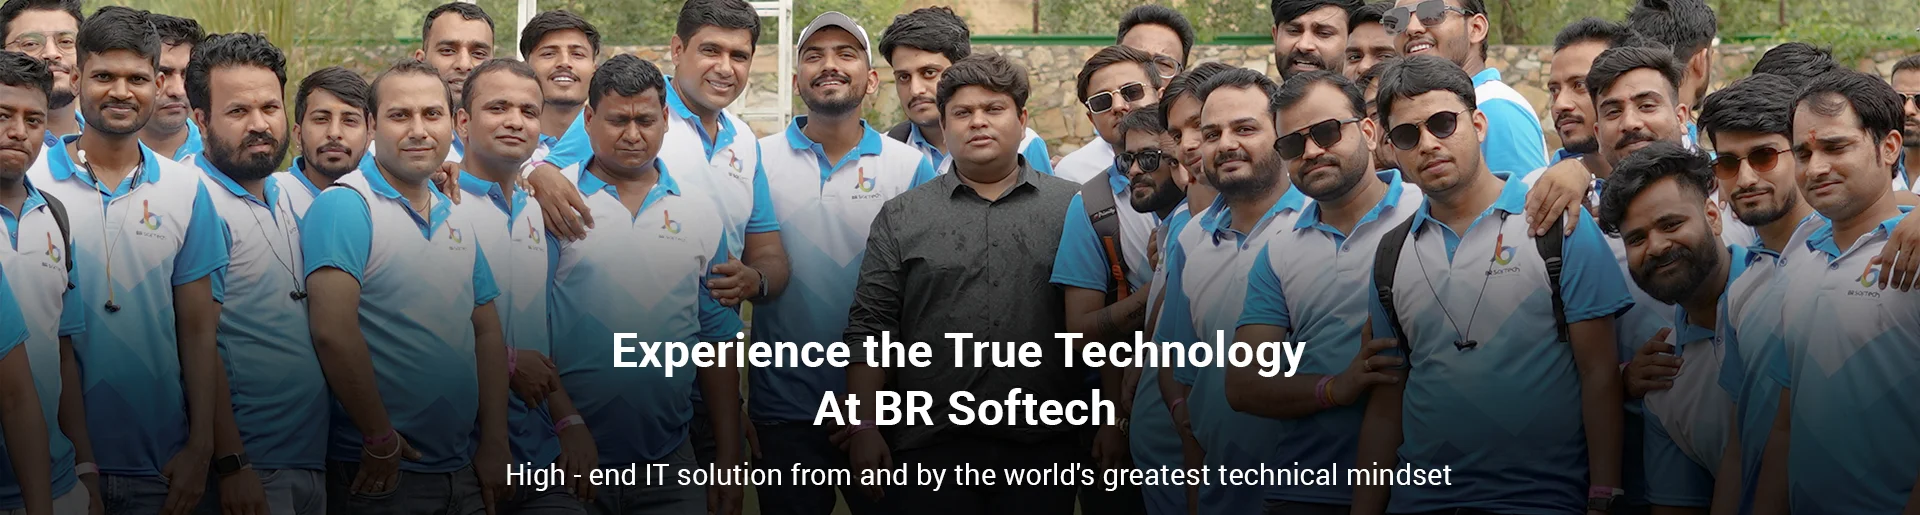 BR-Softech_Team